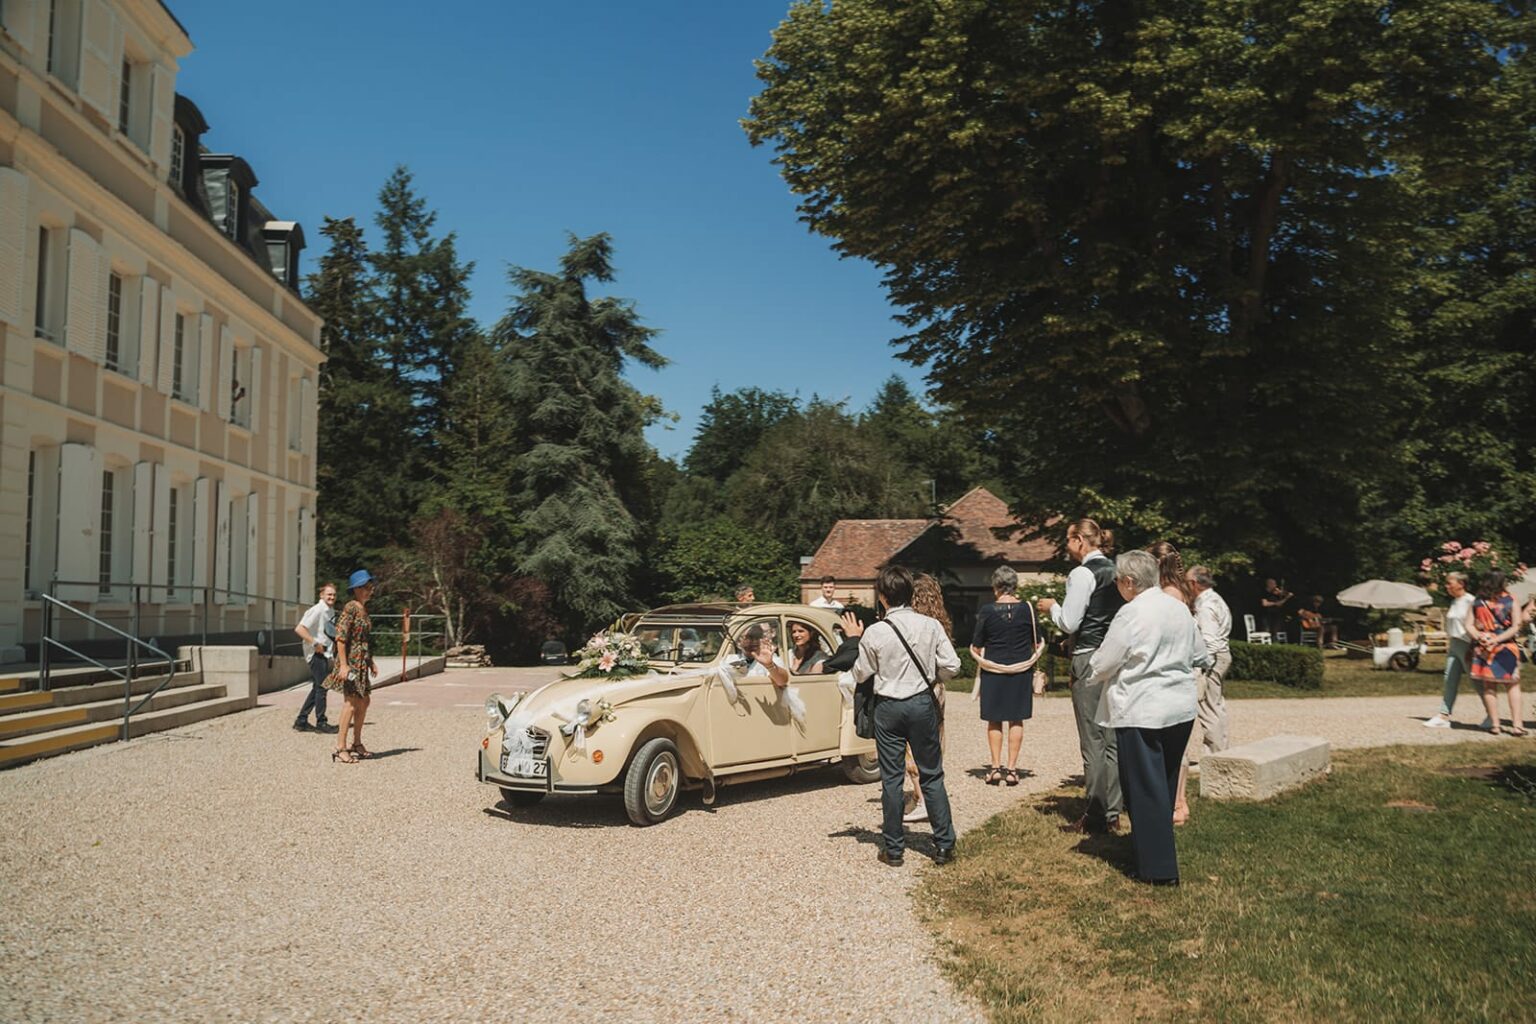 Le mariage de Pauline et Sébastien au château de Quênet à Conches en ouche par Alain Leprévost photographe et vidéaste de mariage en Normandie